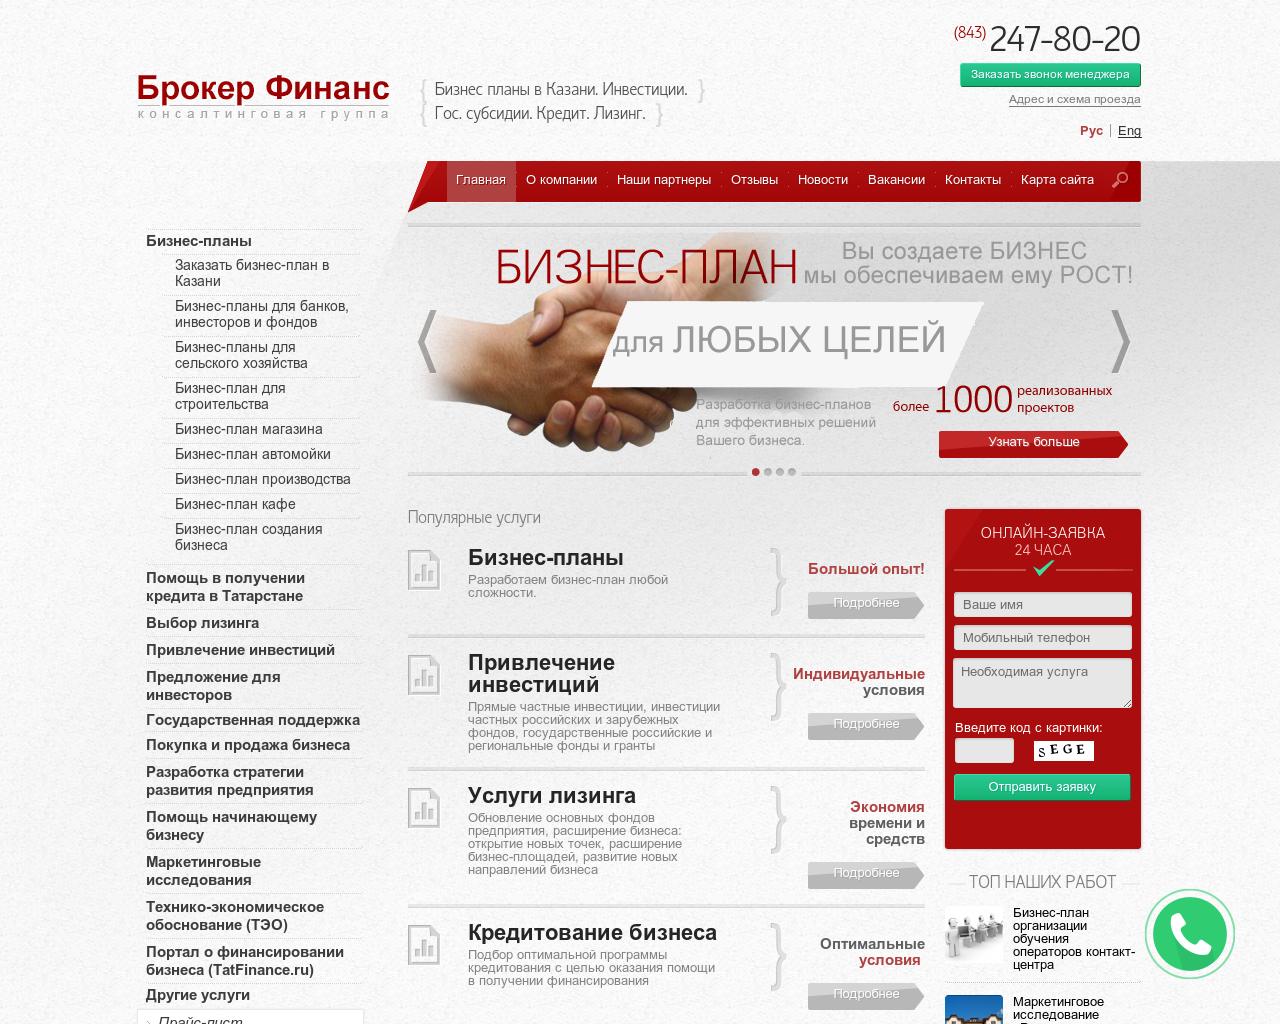 Изображение сайта brokerf.ru в разрешении 1280x1024